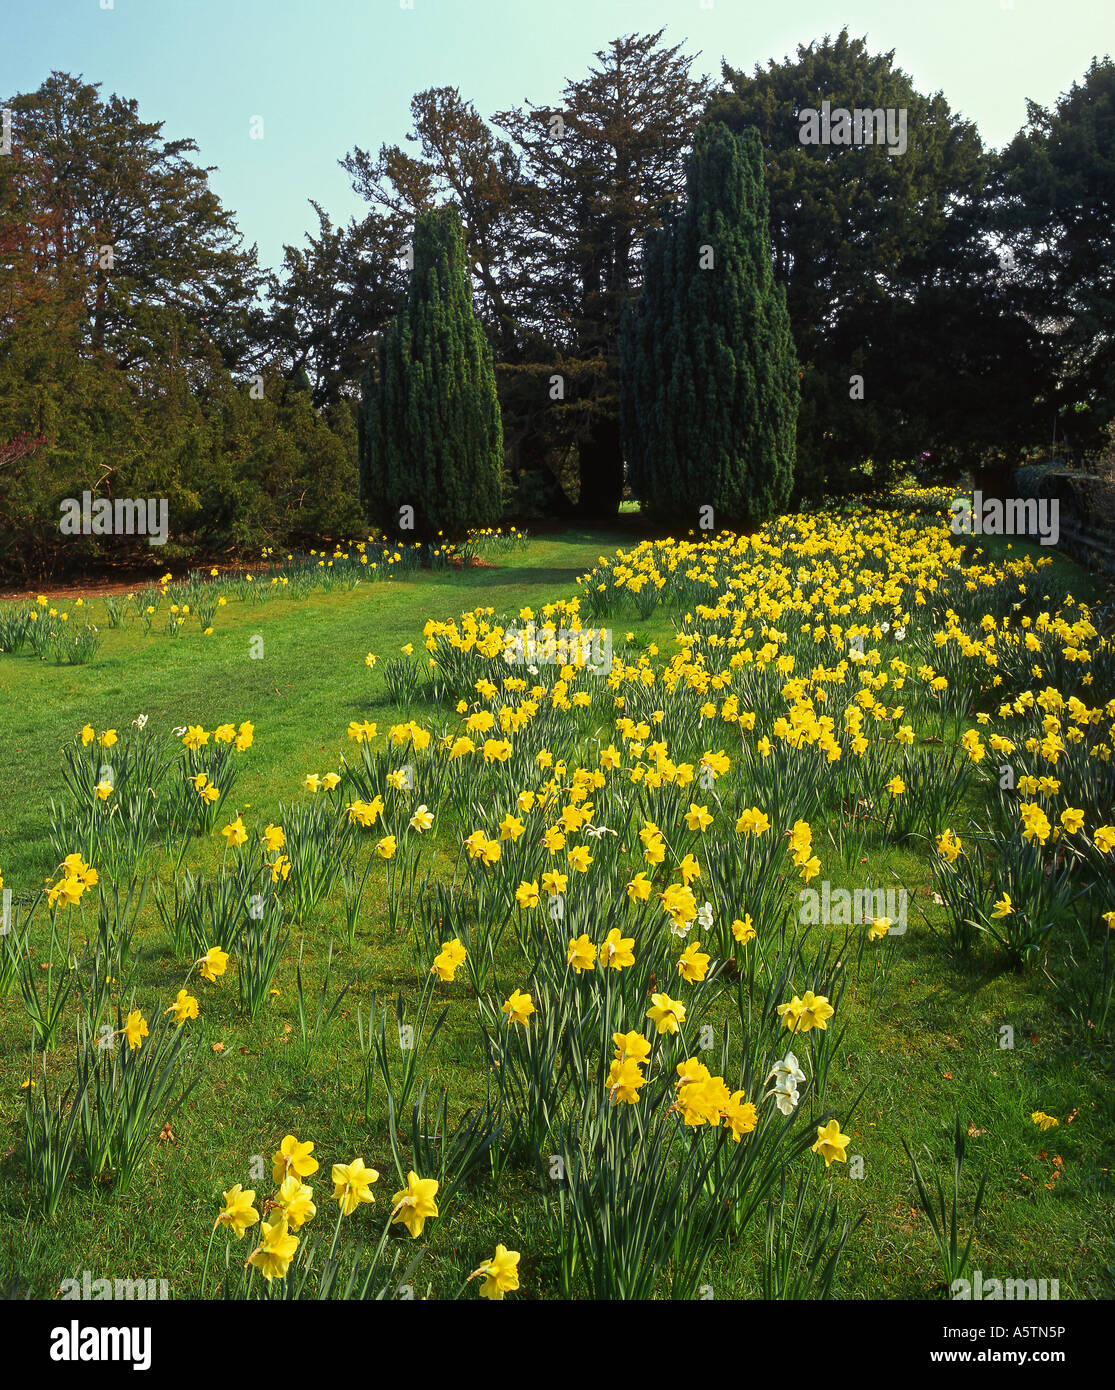 La radura, Arley Hall e giardini, vicino a Knutsford, Cheshire, Inghilterra, Regno Unito Foto Stock